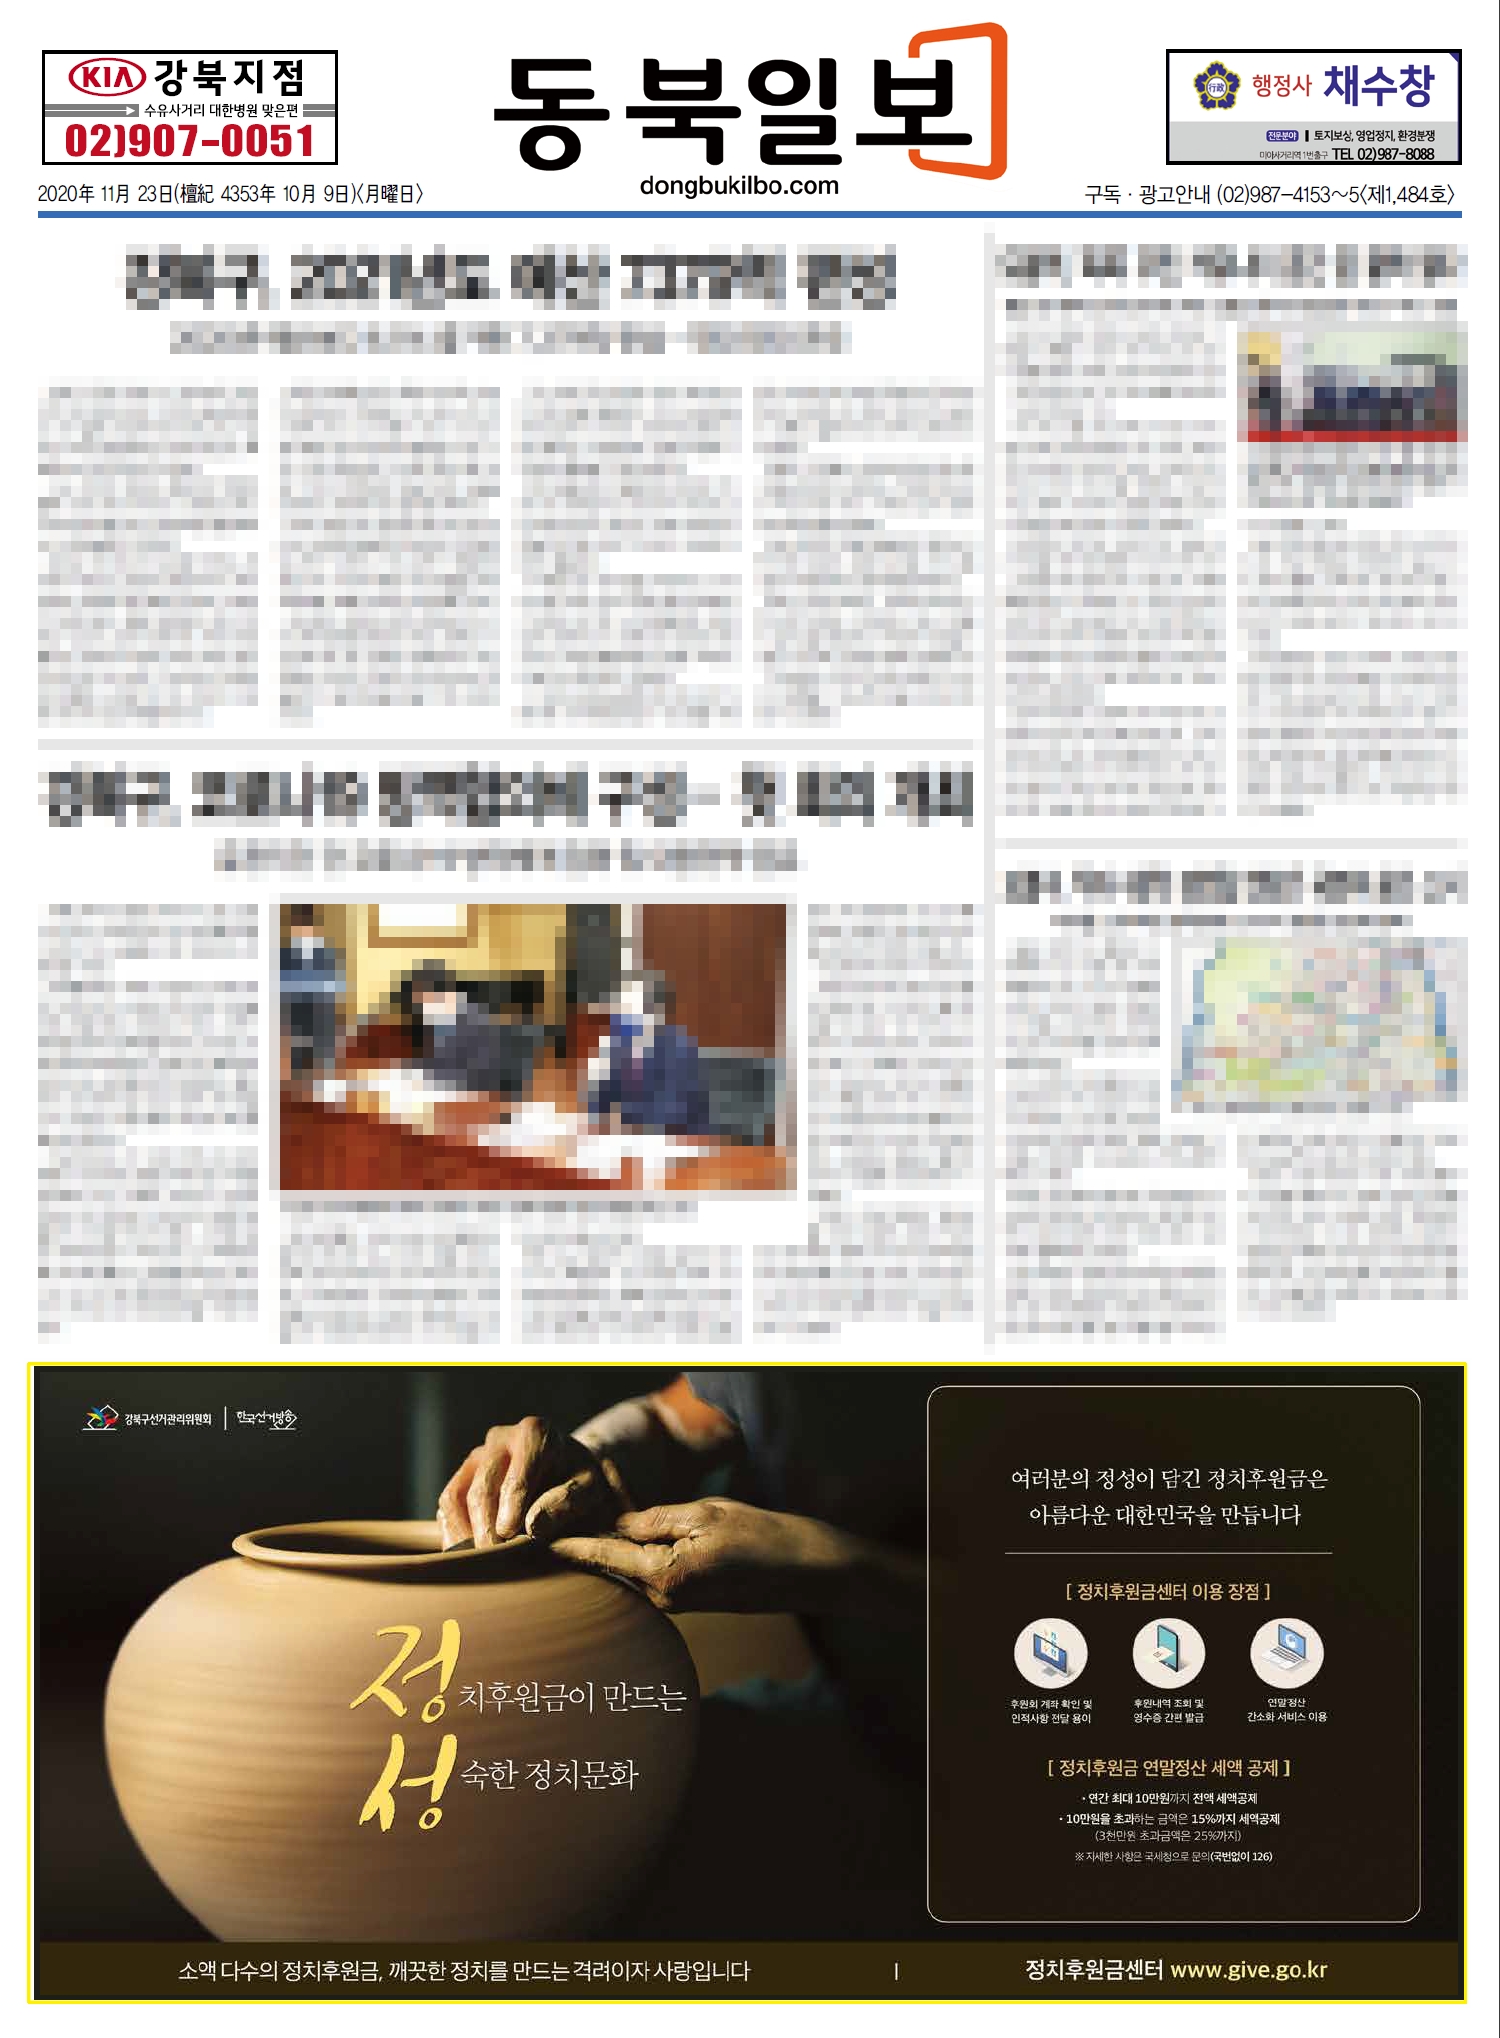 강북구선거관리위원회는 지역신문사에 정치자금 후원 활성화를 위한 신문 광고를 게재하였습니다.